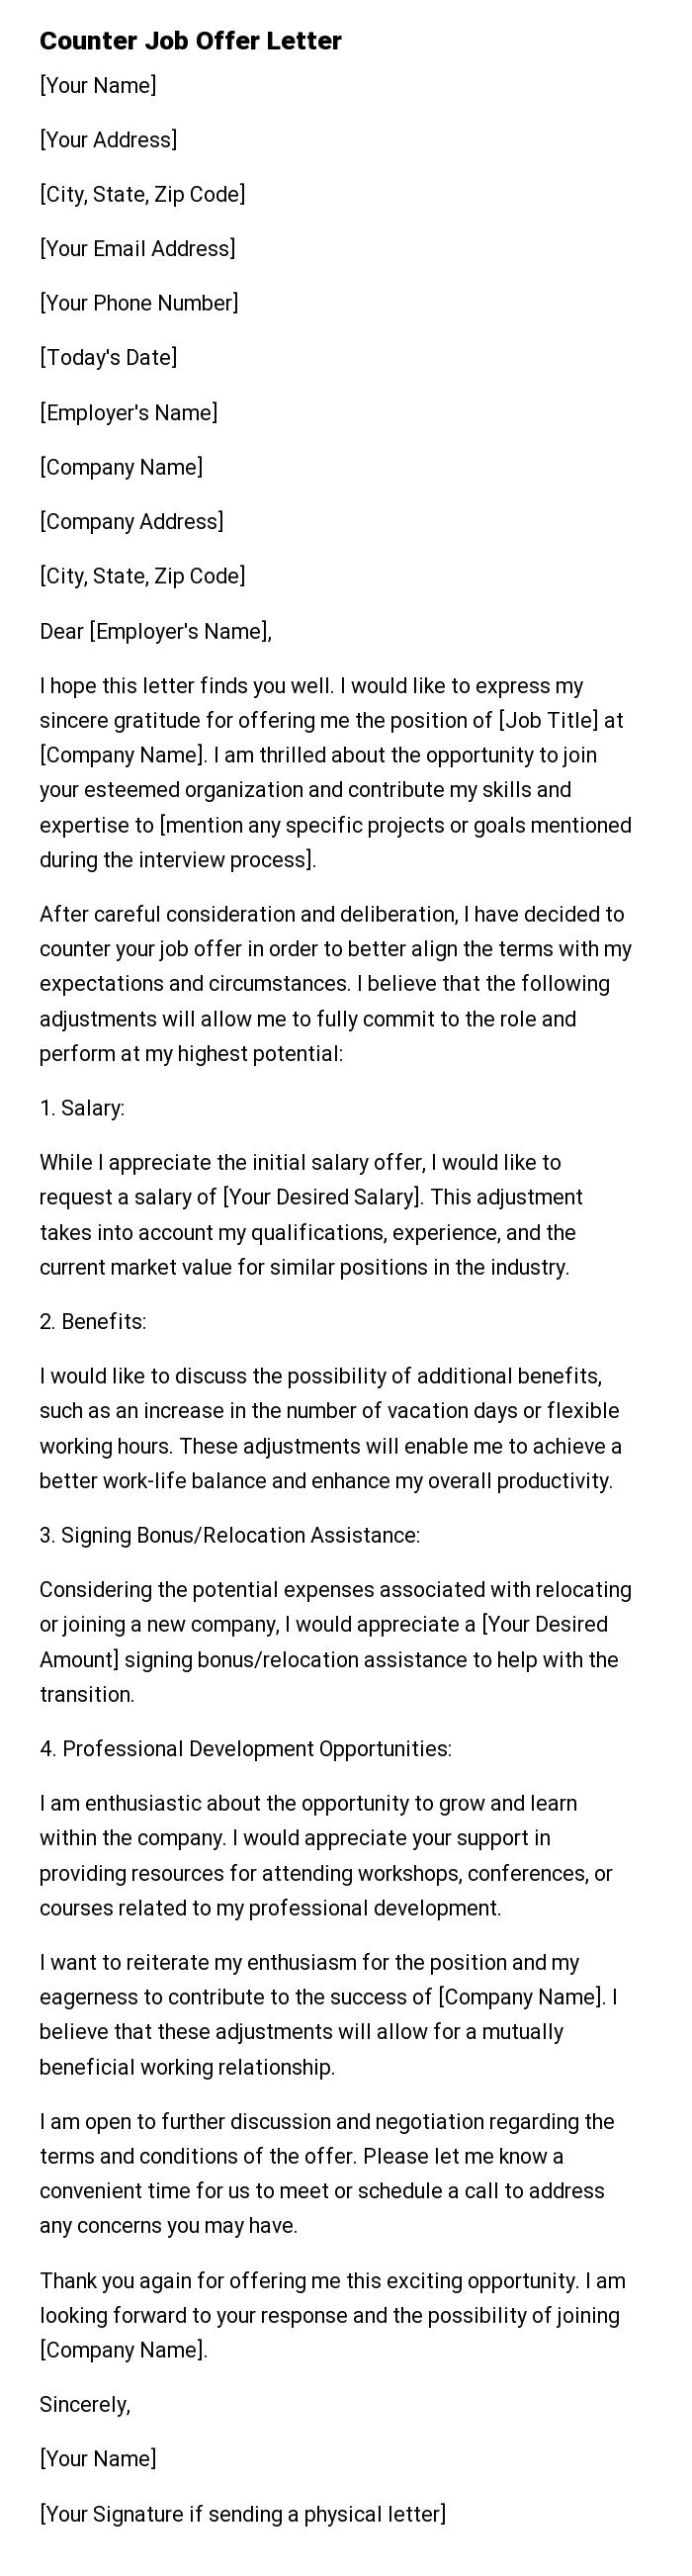 Counter Job Offer Letter